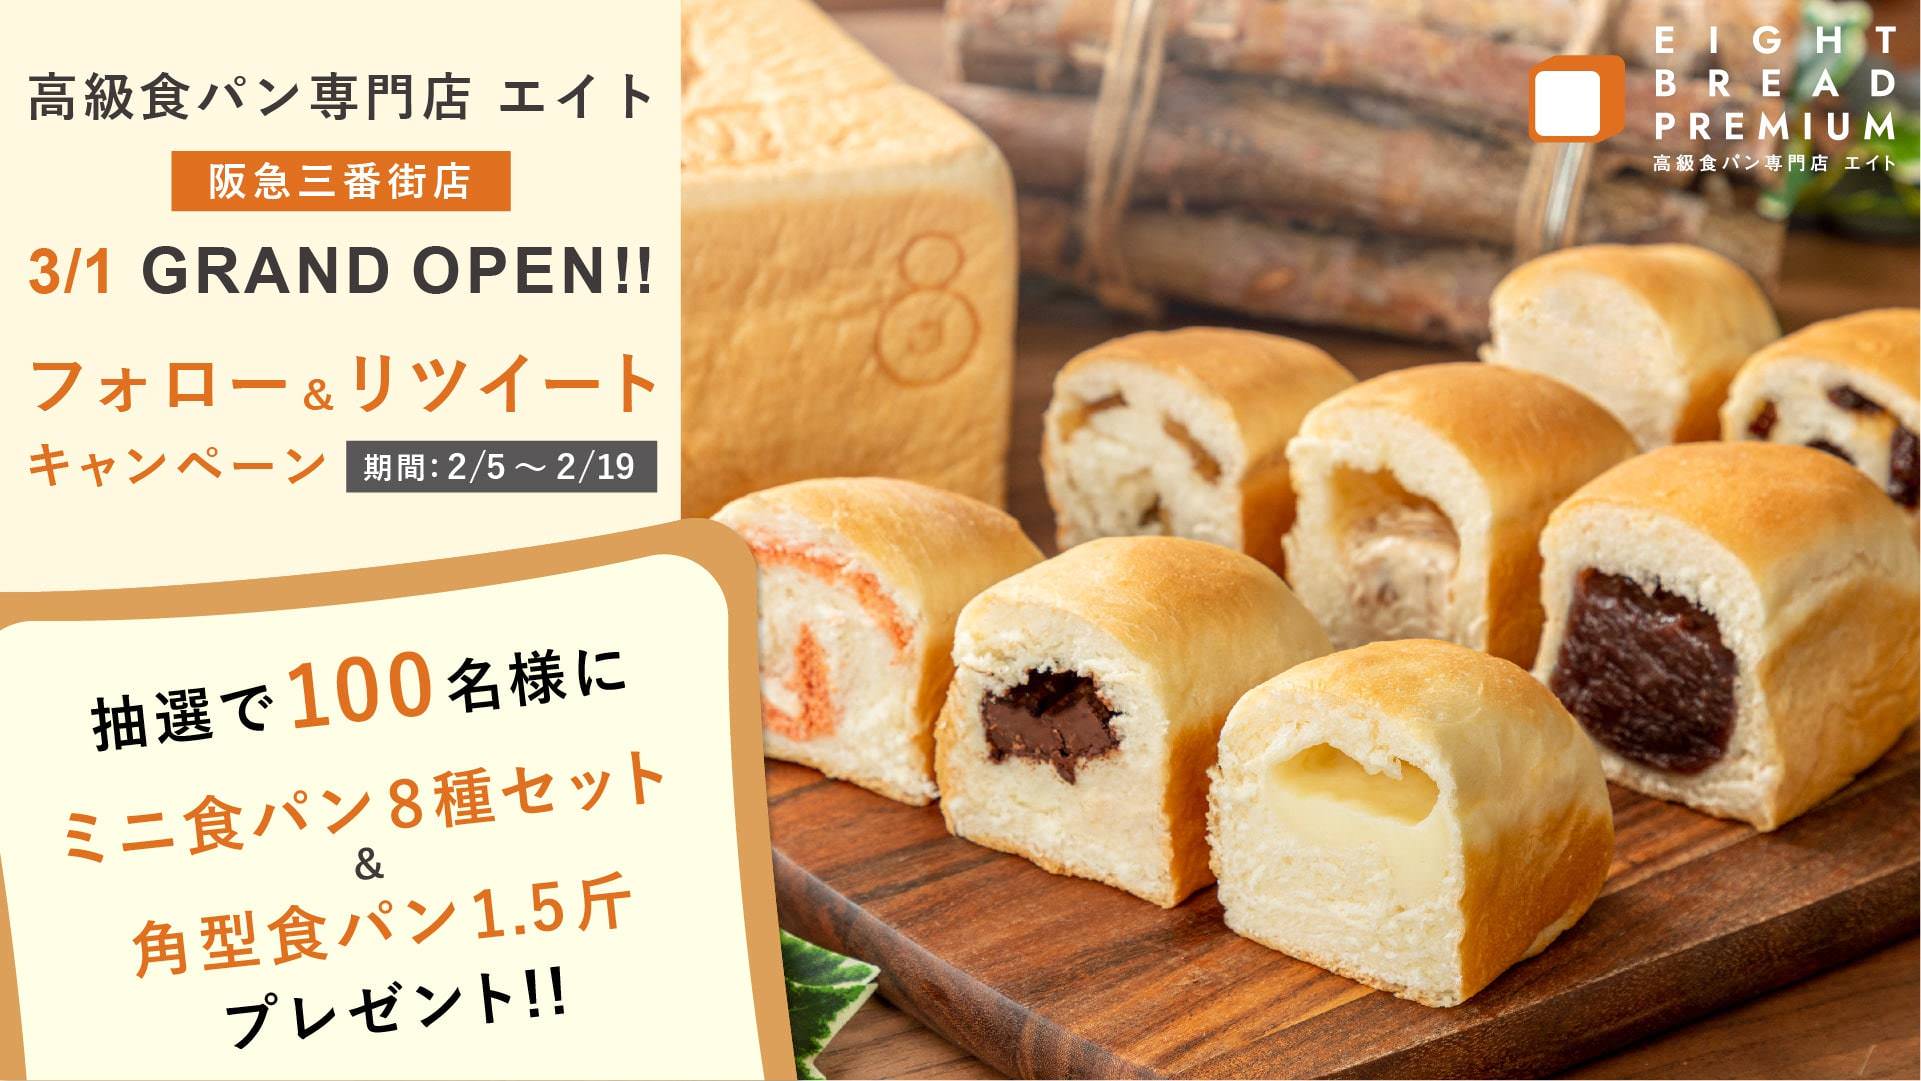 文化庁主催　オンライン食文化シンポジウム　
「食文化あふれる国・日本」　～日本人が育んだ食文化の魅力～　
2021年2月13日(土)に開催　
第1回「我が家のお正月料理」フォトコンテスト　入賞者を発表